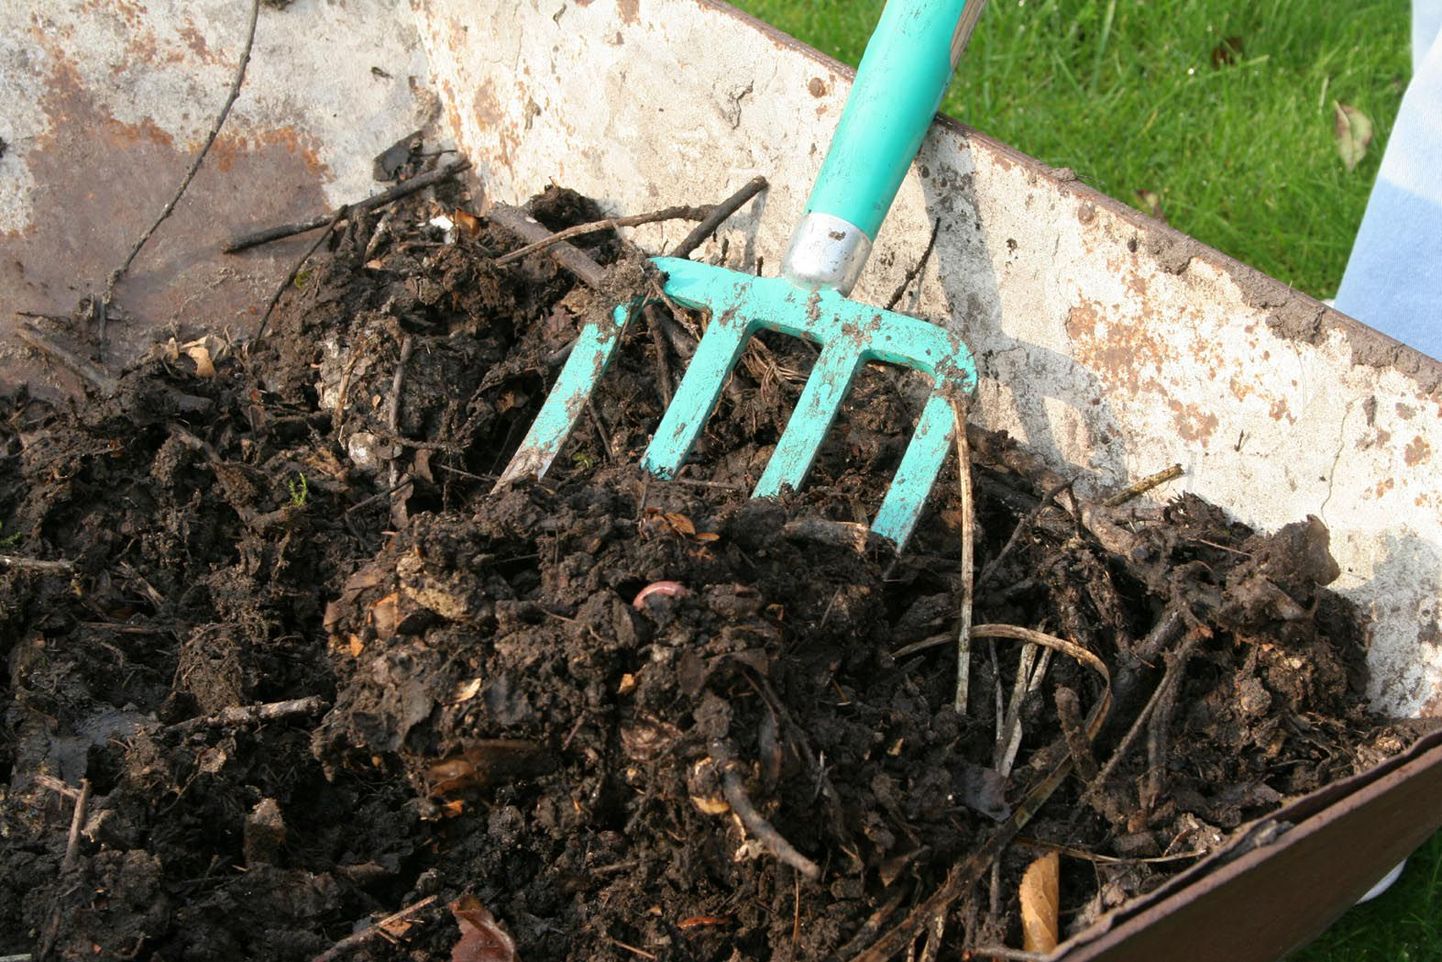 Komposti tegemiseks ei pea muretsema eraldi kompostrit, vaid asja ajab ära ka kodustest vahendistest tehtud kinnine anum.